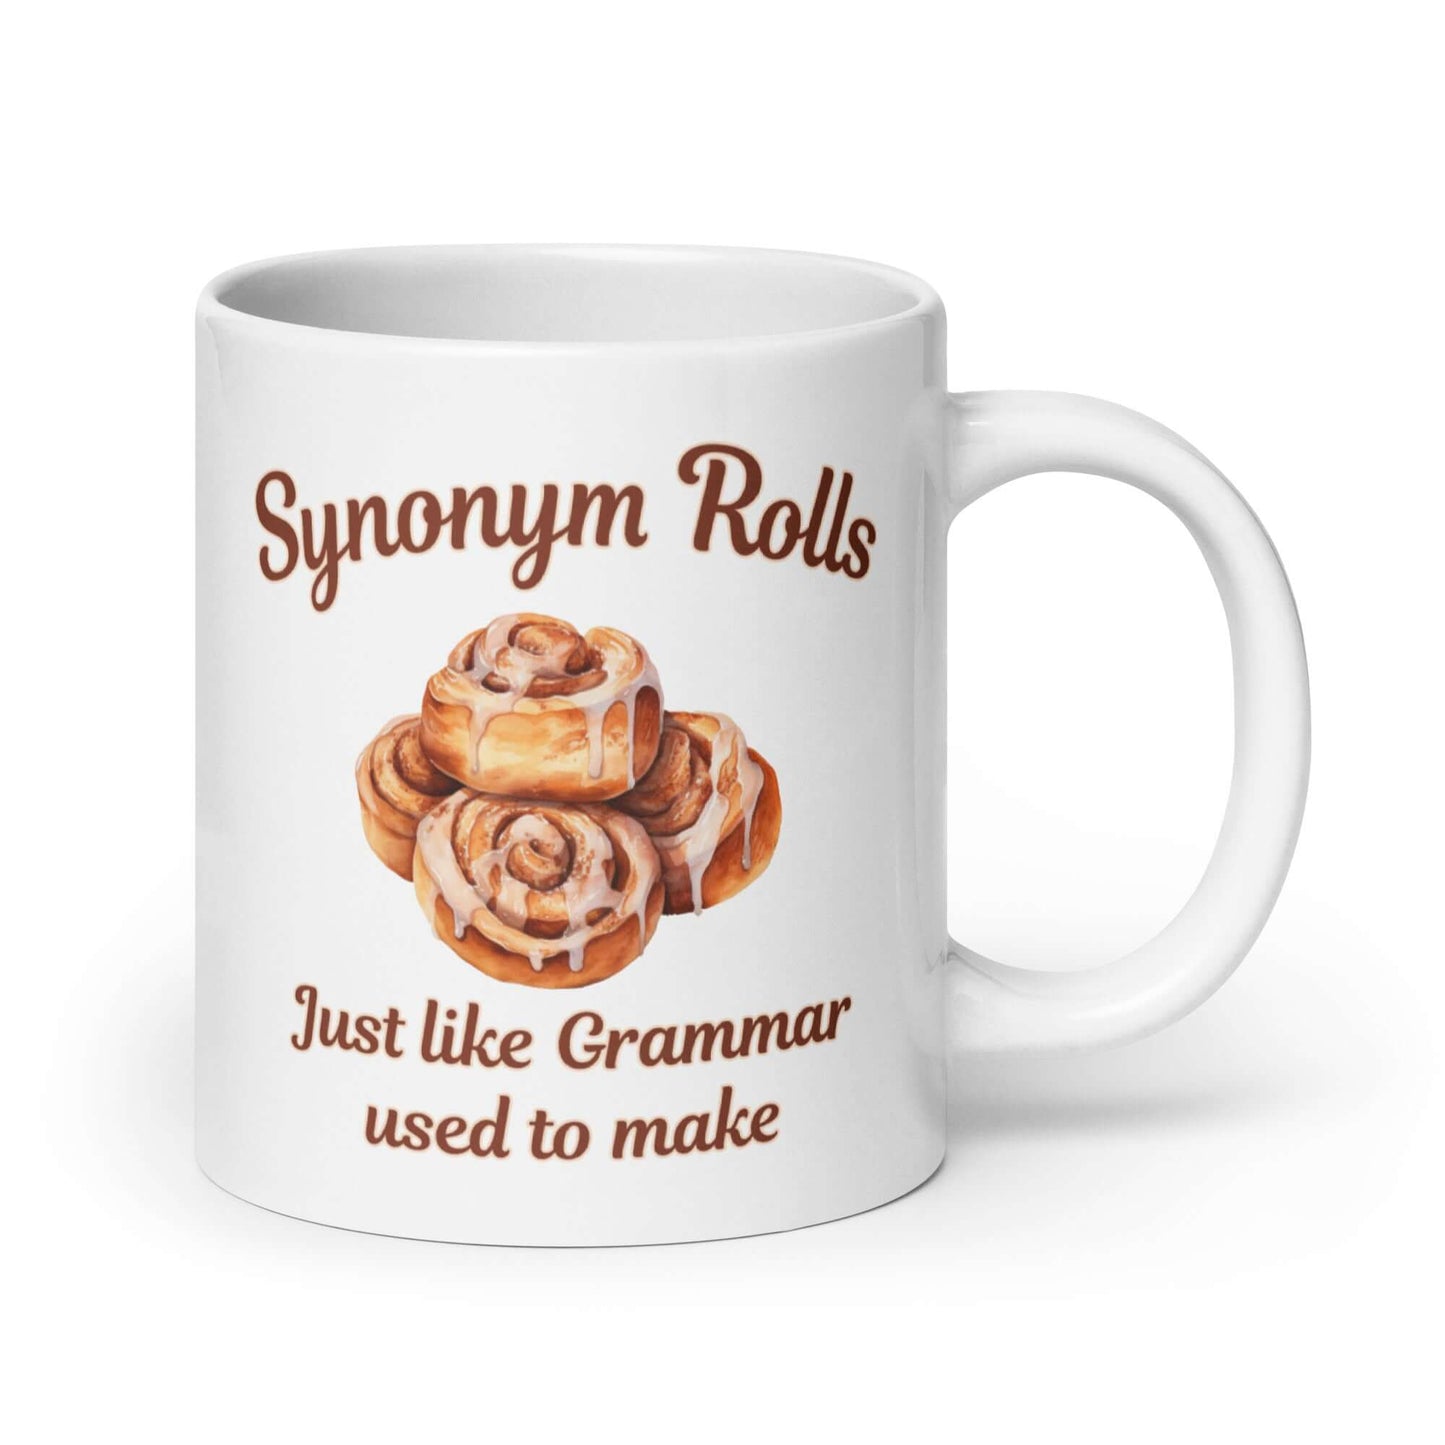 Cinnamon rolls funny mug. Synonym rolls like grammar made ceramic coffee mug